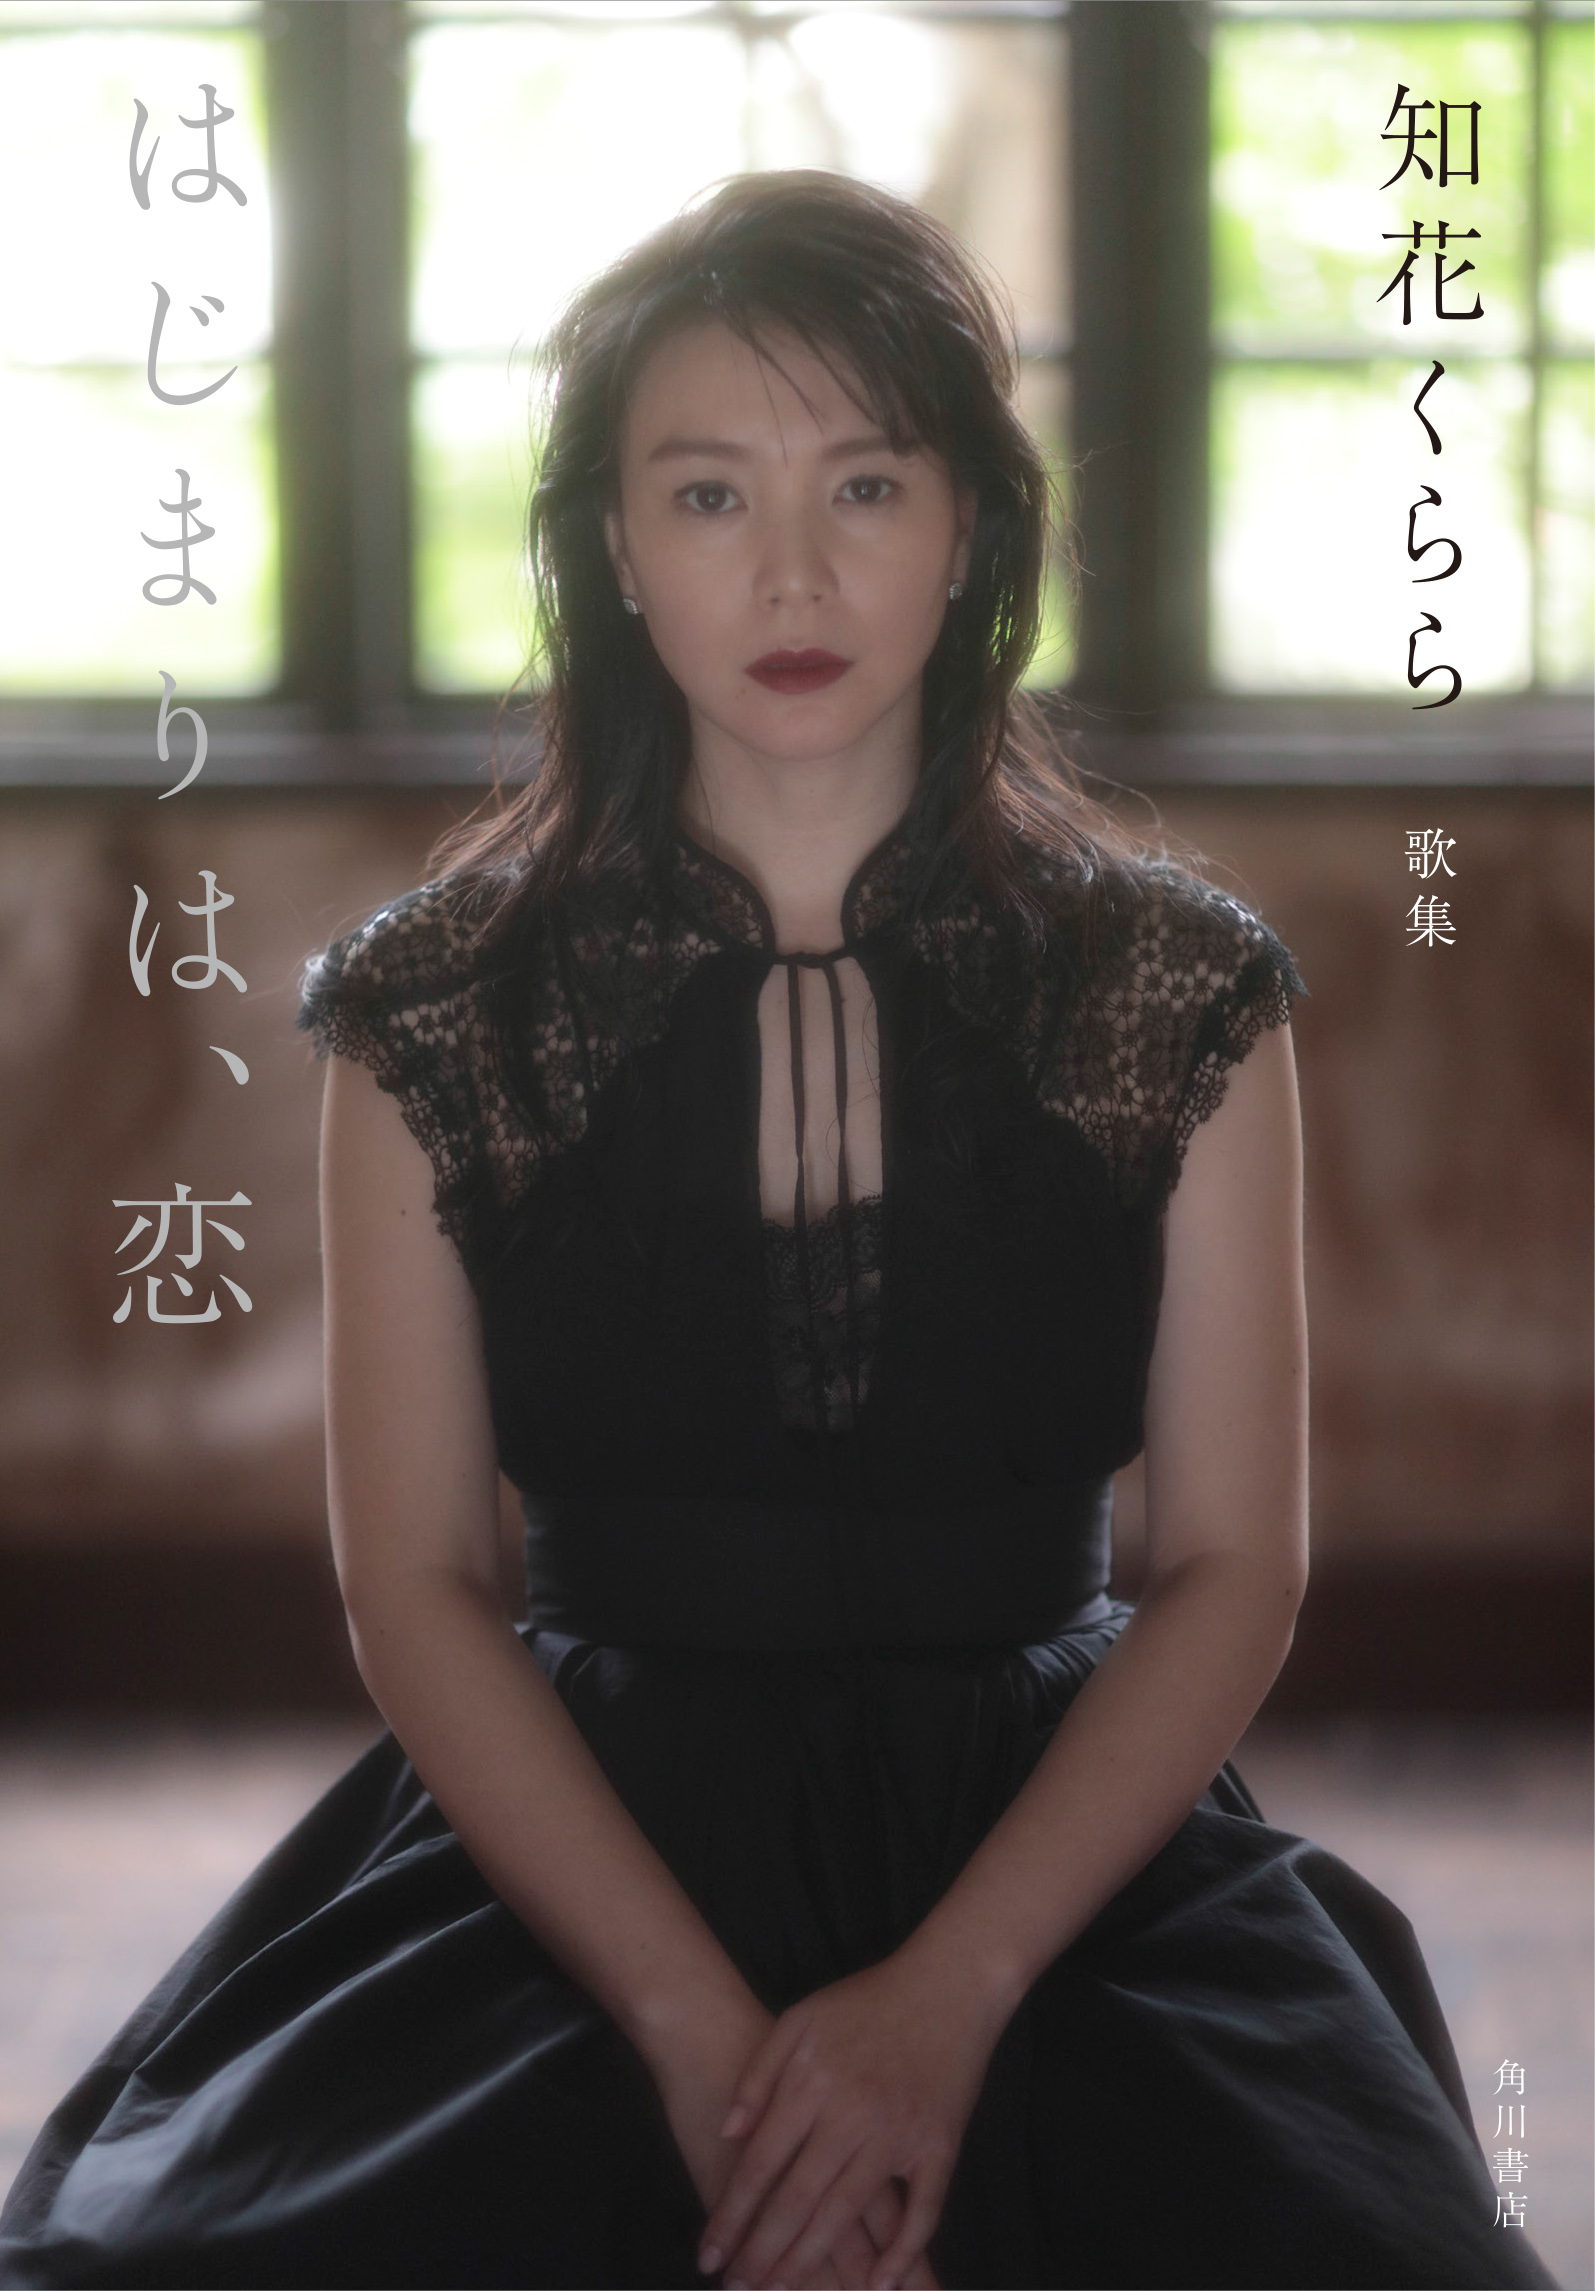 知花くらら 処女歌集 はじまりは 恋 6月28日 金 刊行 株式会社kadokawaのプレスリリース